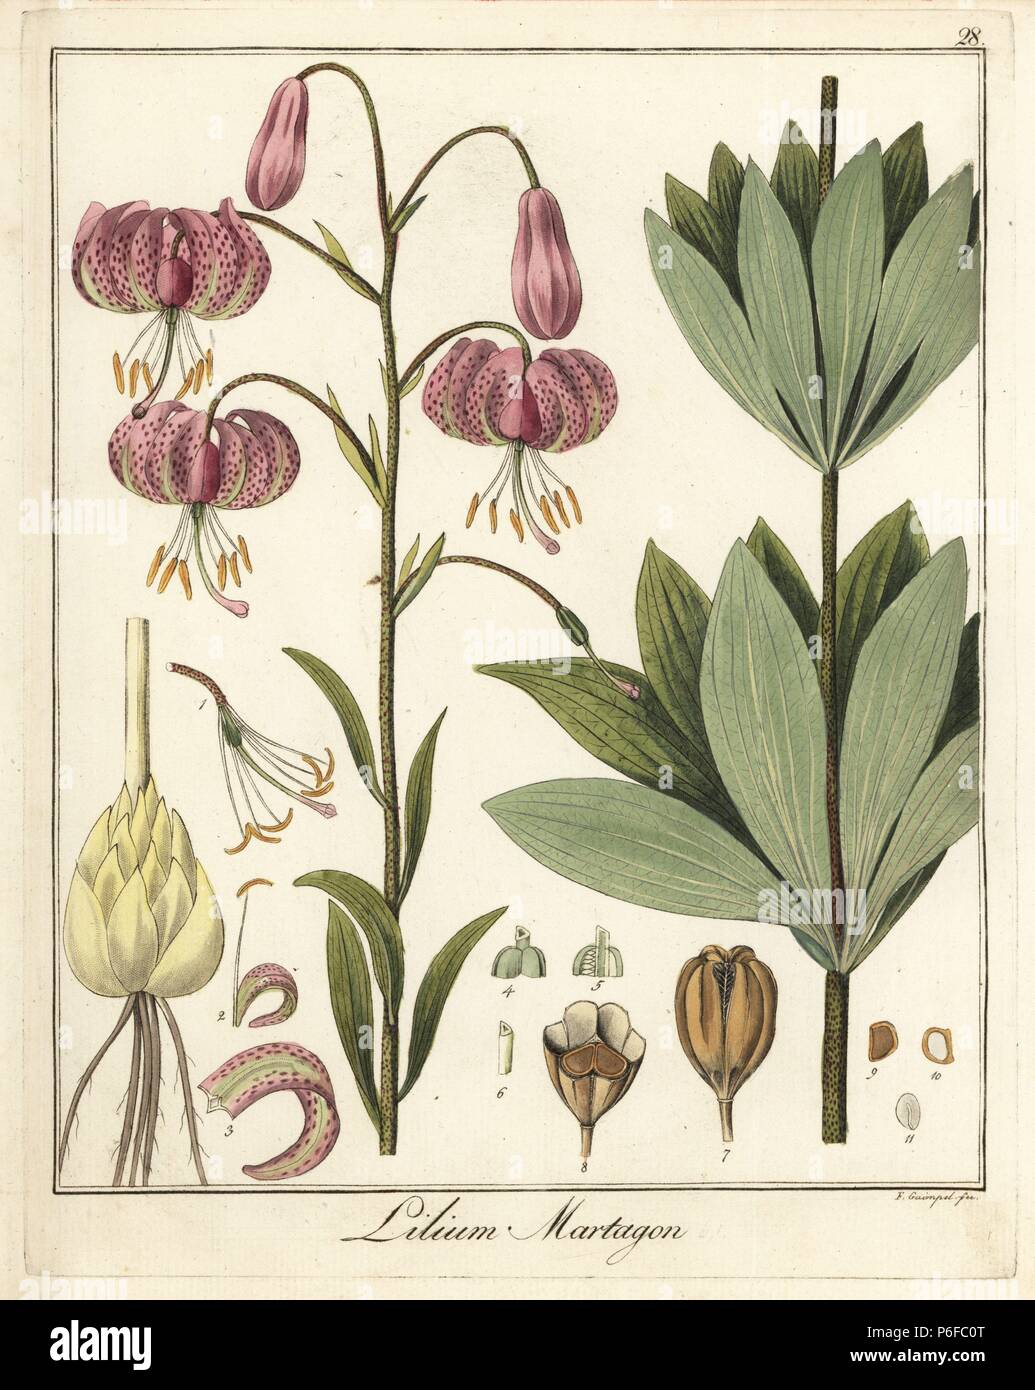 Ou Martagon Turk's cap lily, Lilium martagon. La gravure sur cuivre coloriée par F. Guimpel de Dr. Friedrich Gottlob Hayne's Botanique Médicale, Berlin, 1822. Hayne (1763-1832) était un botaniste allemand, apothicaire et professeur de botanique pharmaceutique à l'Université de Berlin. Banque D'Images